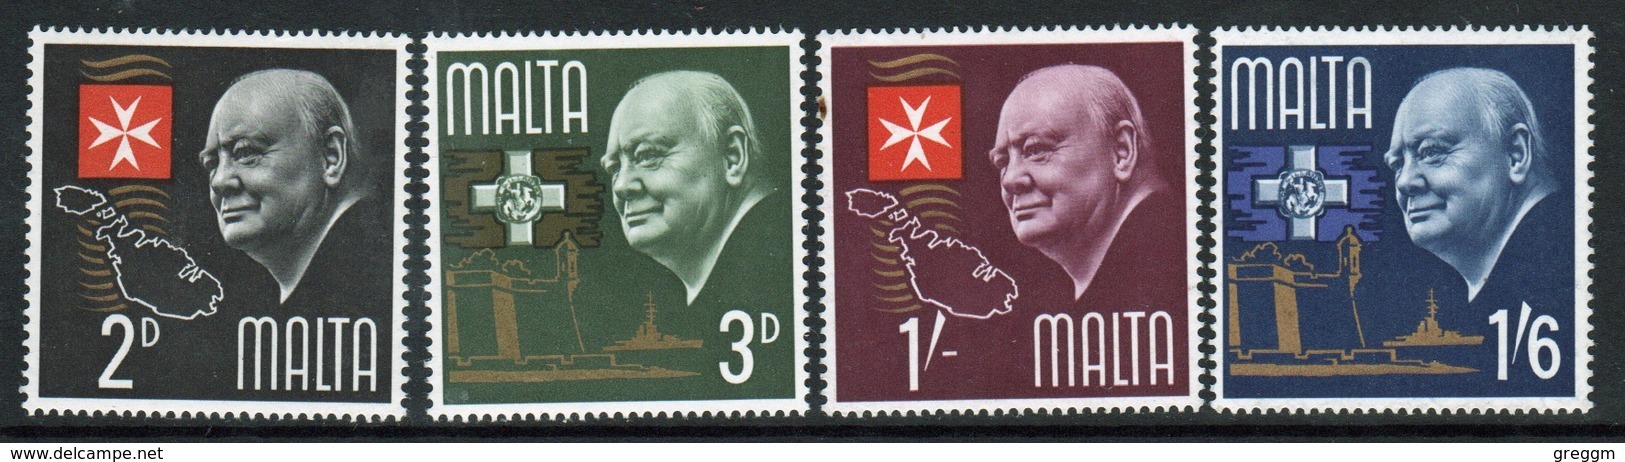 Malta Complete Set Of Stamps To Celebrate Churchill Commemoration 1966. - Malta